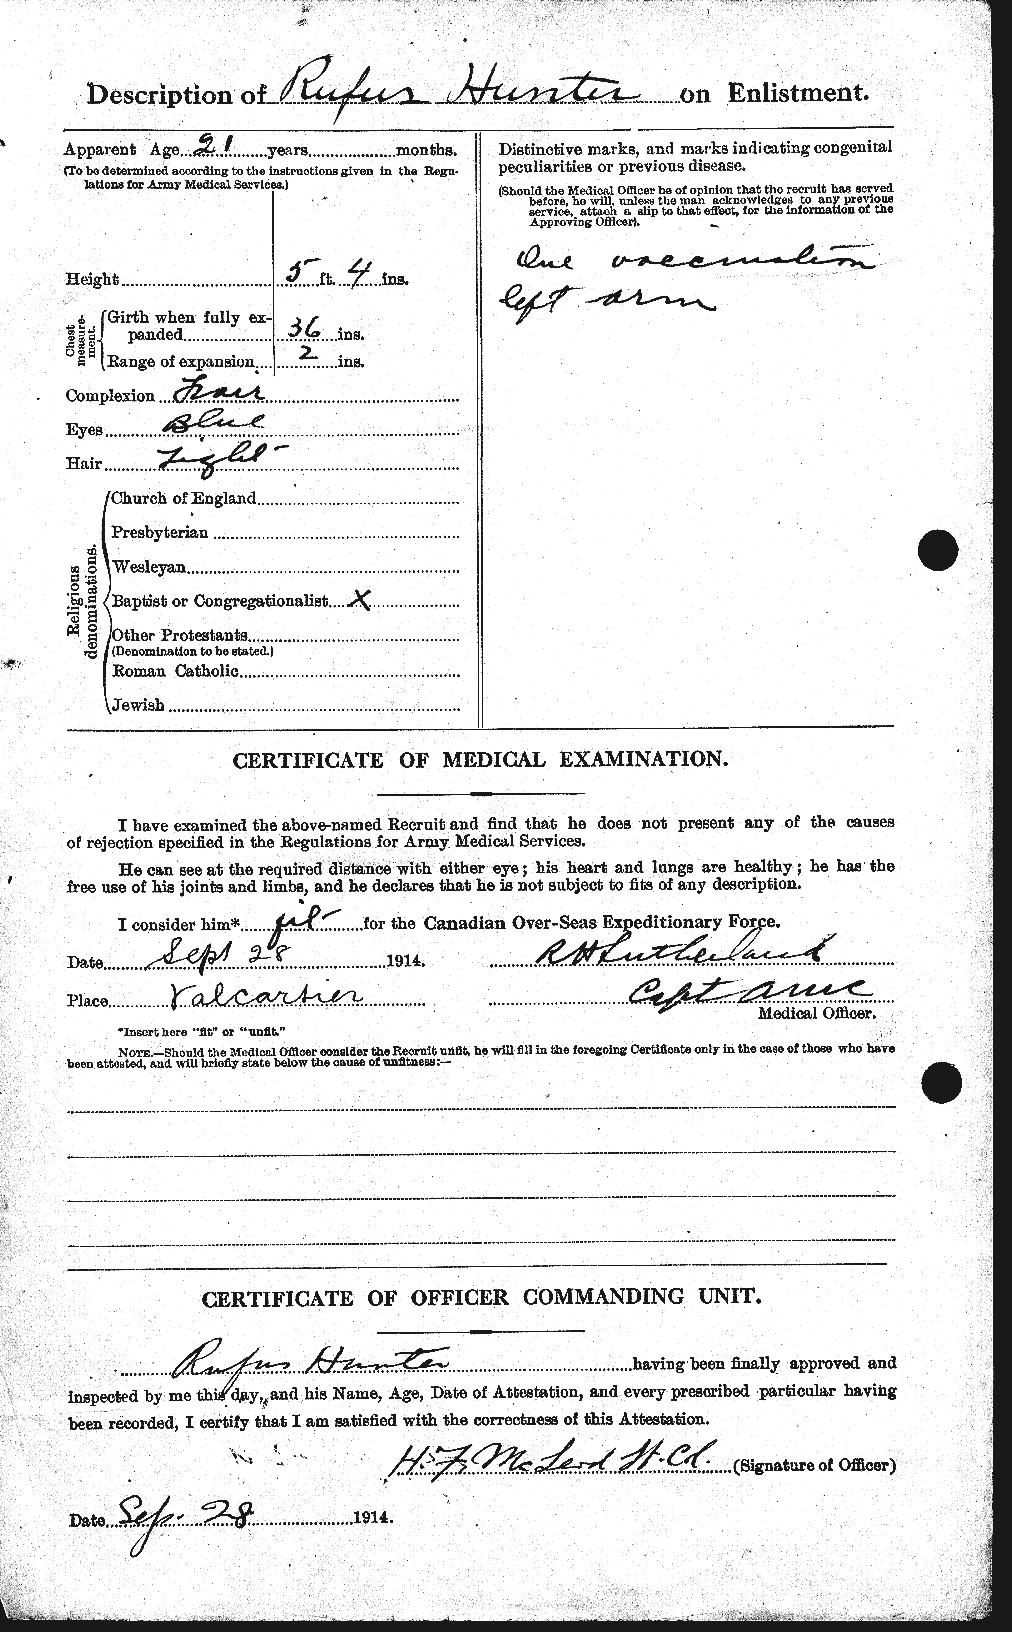 Dossiers du Personnel de la Première Guerre mondiale - CEC 406498b